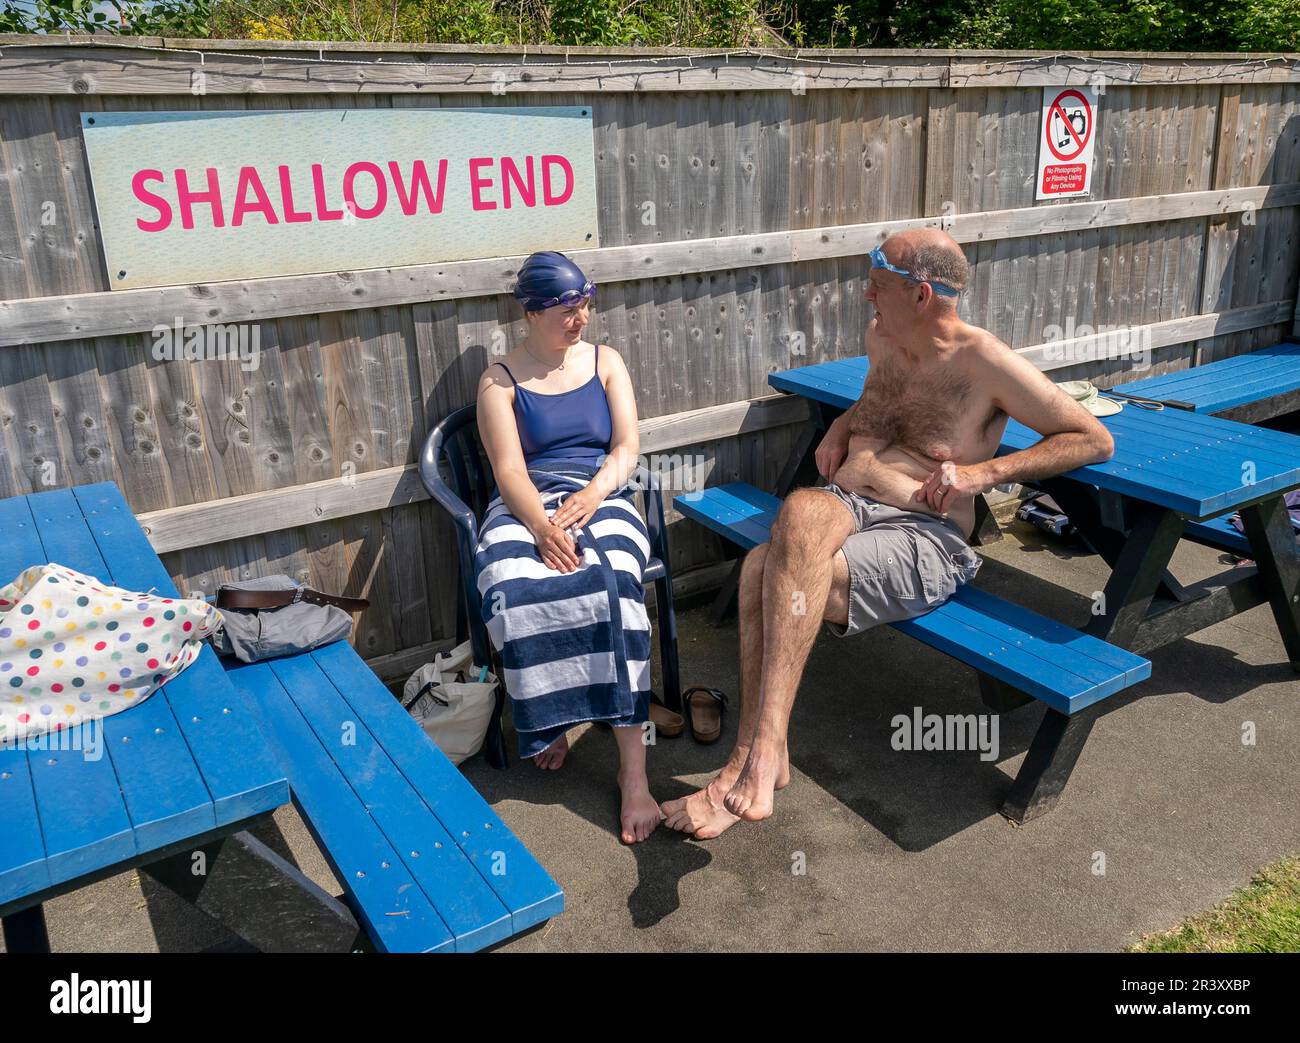 Le persone che si godono il clima caldo presso la piscina all'aperto Hathersage nel Peak District. Data immagine: Giovedì 25 maggio 2023. Foto Stock